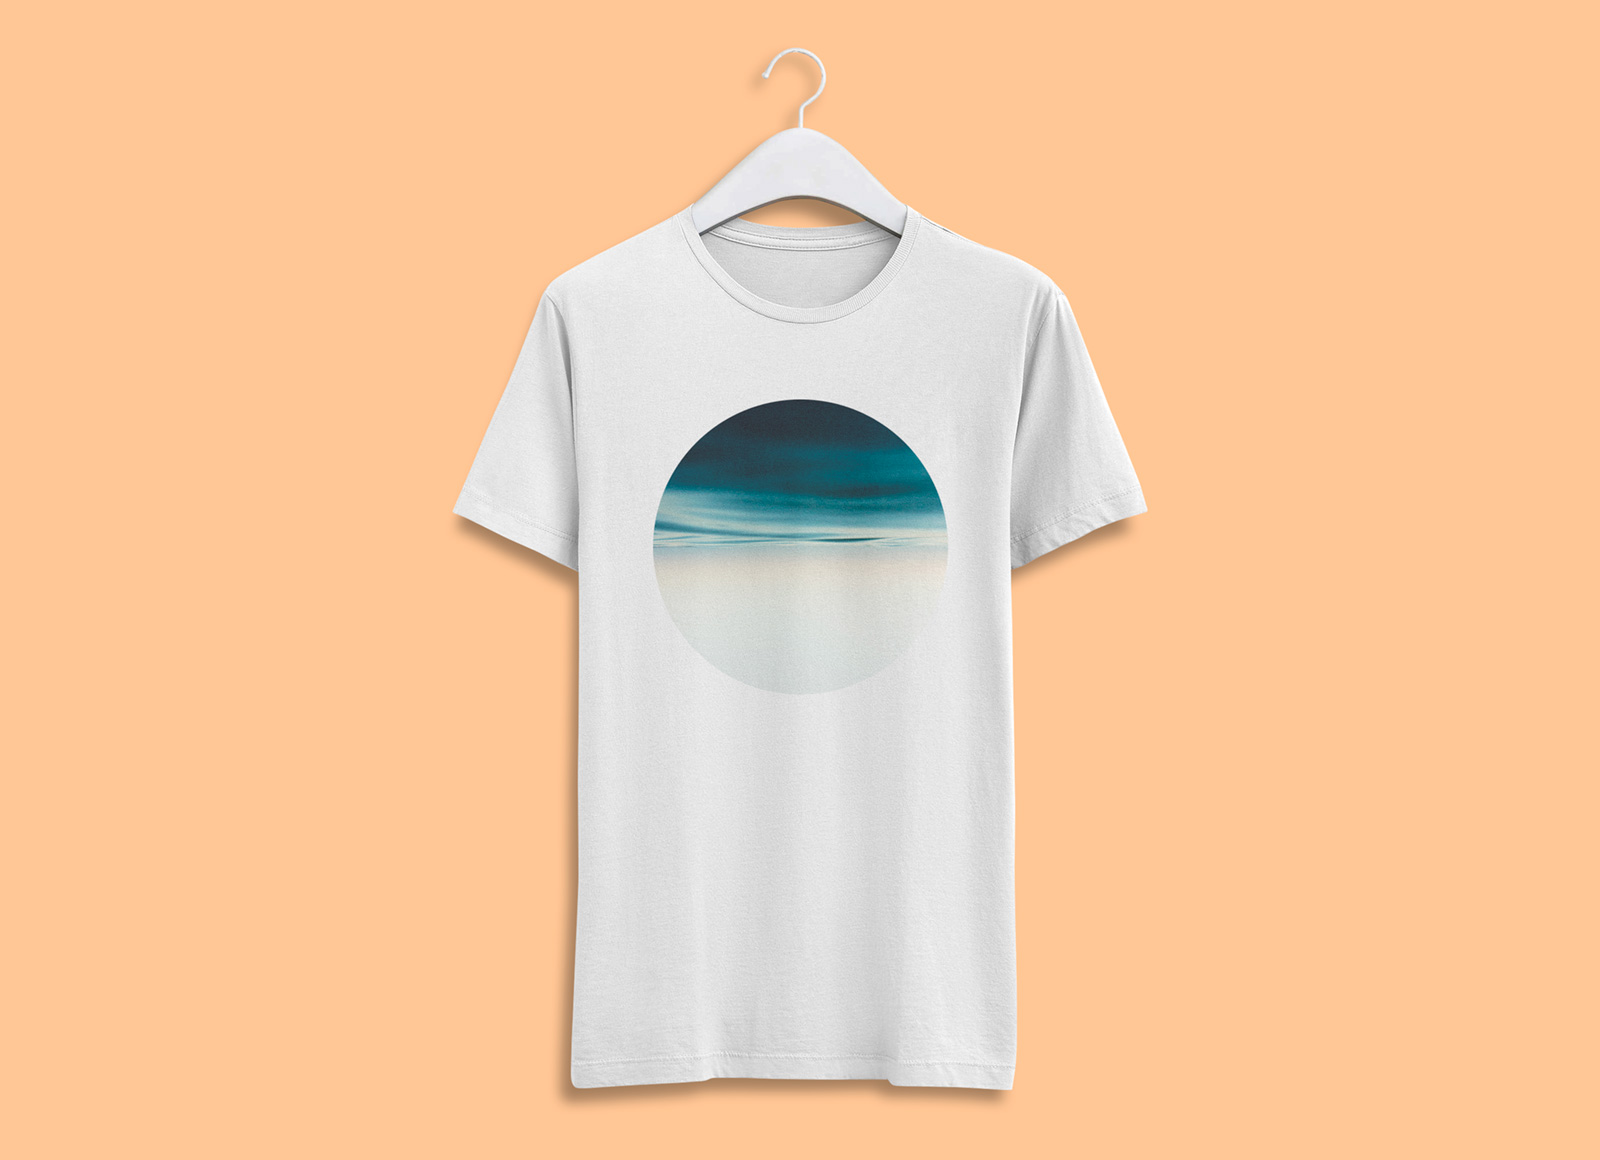 逼真的T恤图案设计贴图模版 Realistic T-Shir